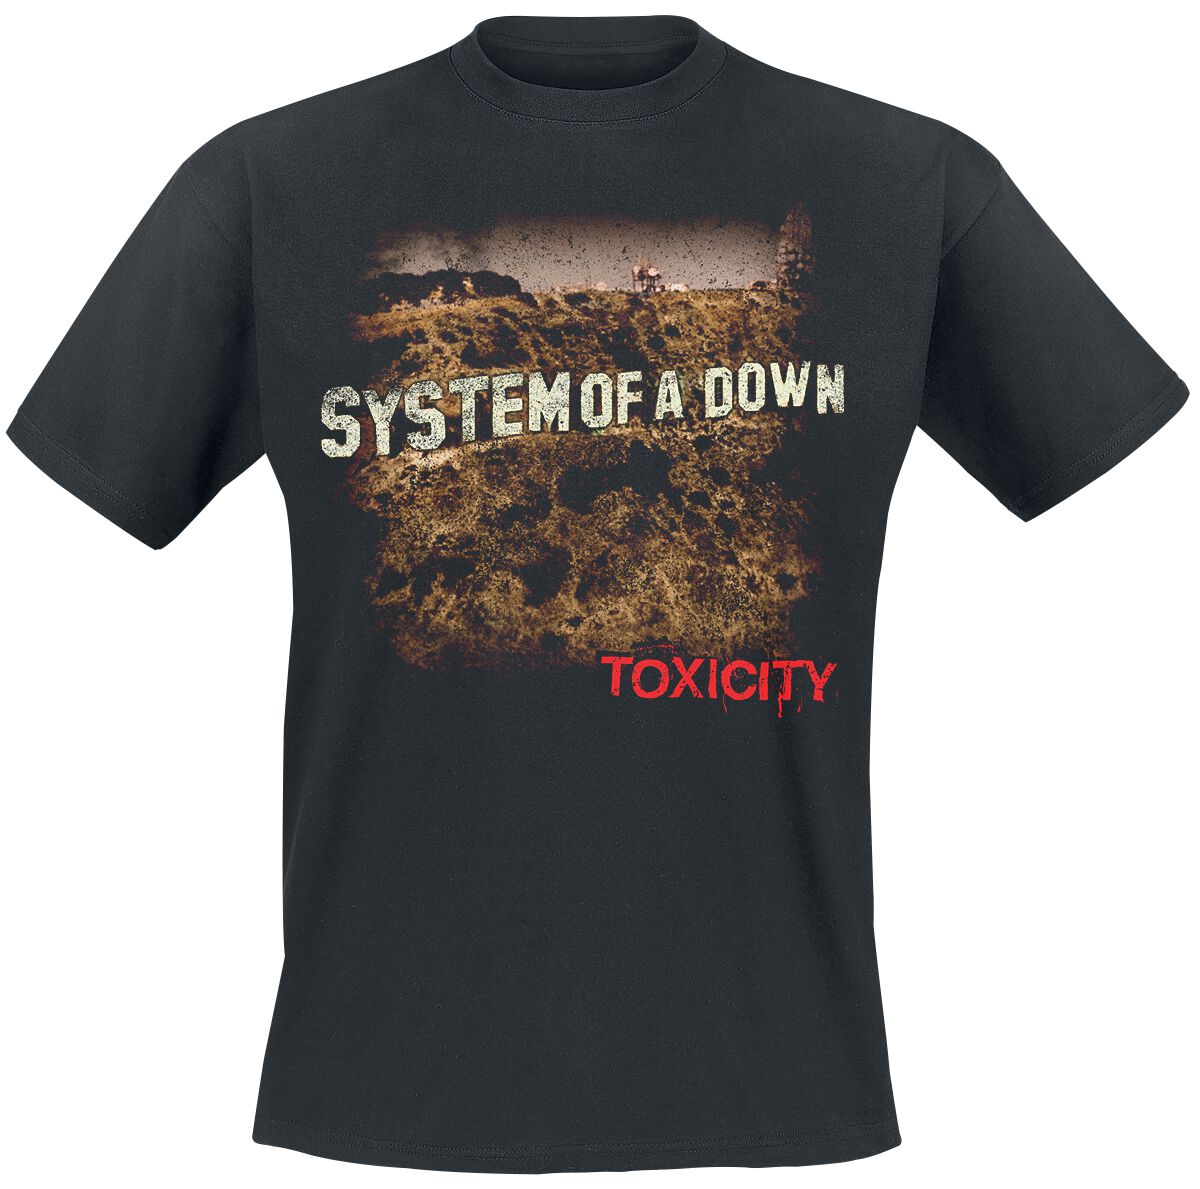 System Of A Down T-Shirt - Toxicity - S bis XXL - für Männer - Größe M - schwarz  - Lizenziertes Merchandise!